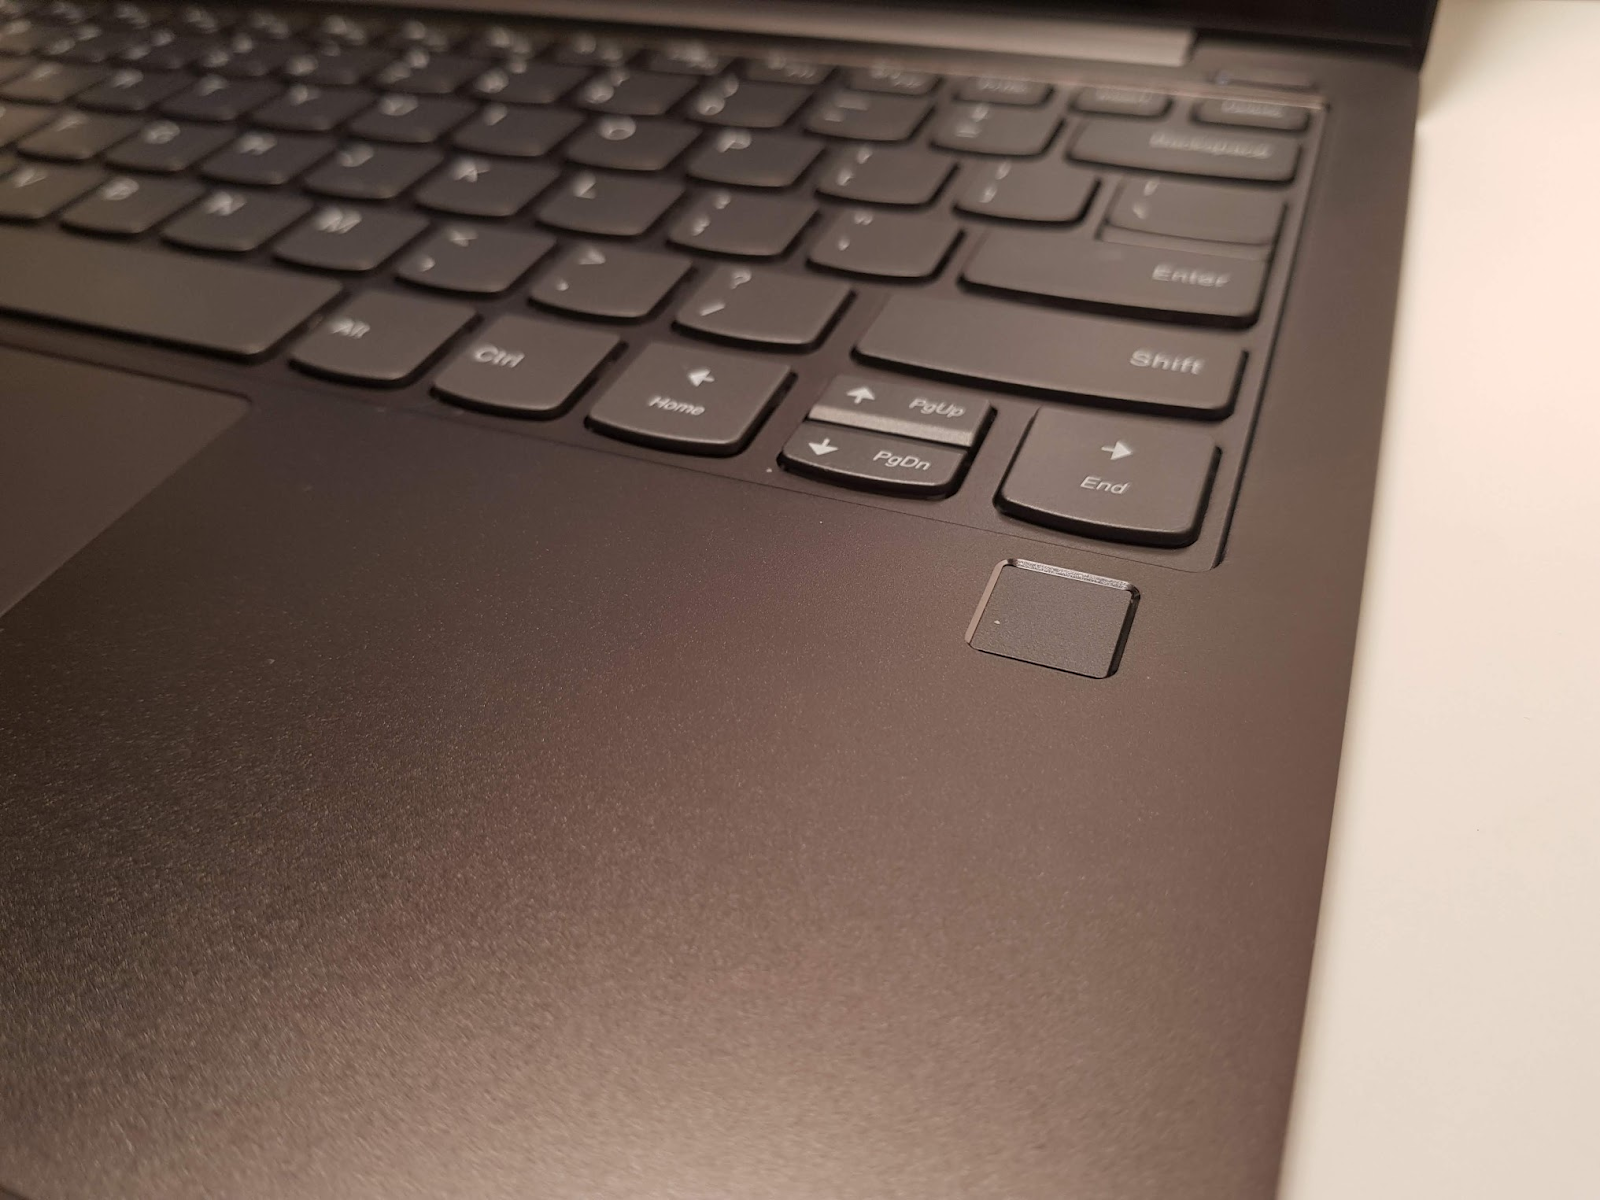 Обзор ноутбука Lenovo S730-13 (2018): мощное железо в стильном алюминиевом корпусе - 14